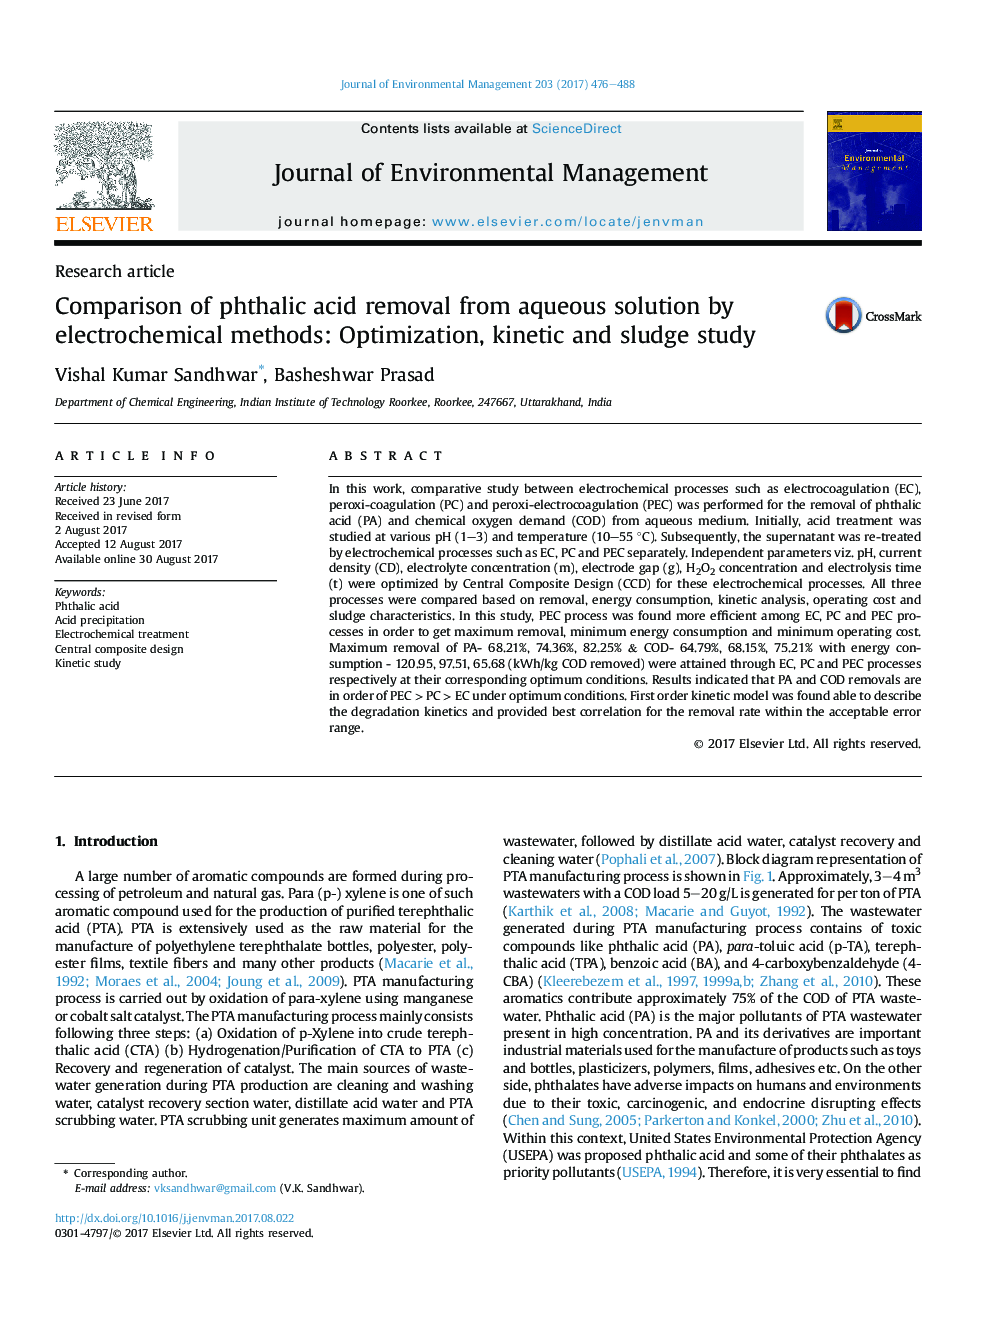 مقایسه حذف اسید فتالیک از محلول آبی با روش های الکتروشیمیایی: بهینه سازی، مطالعه جنبشی و لجن 